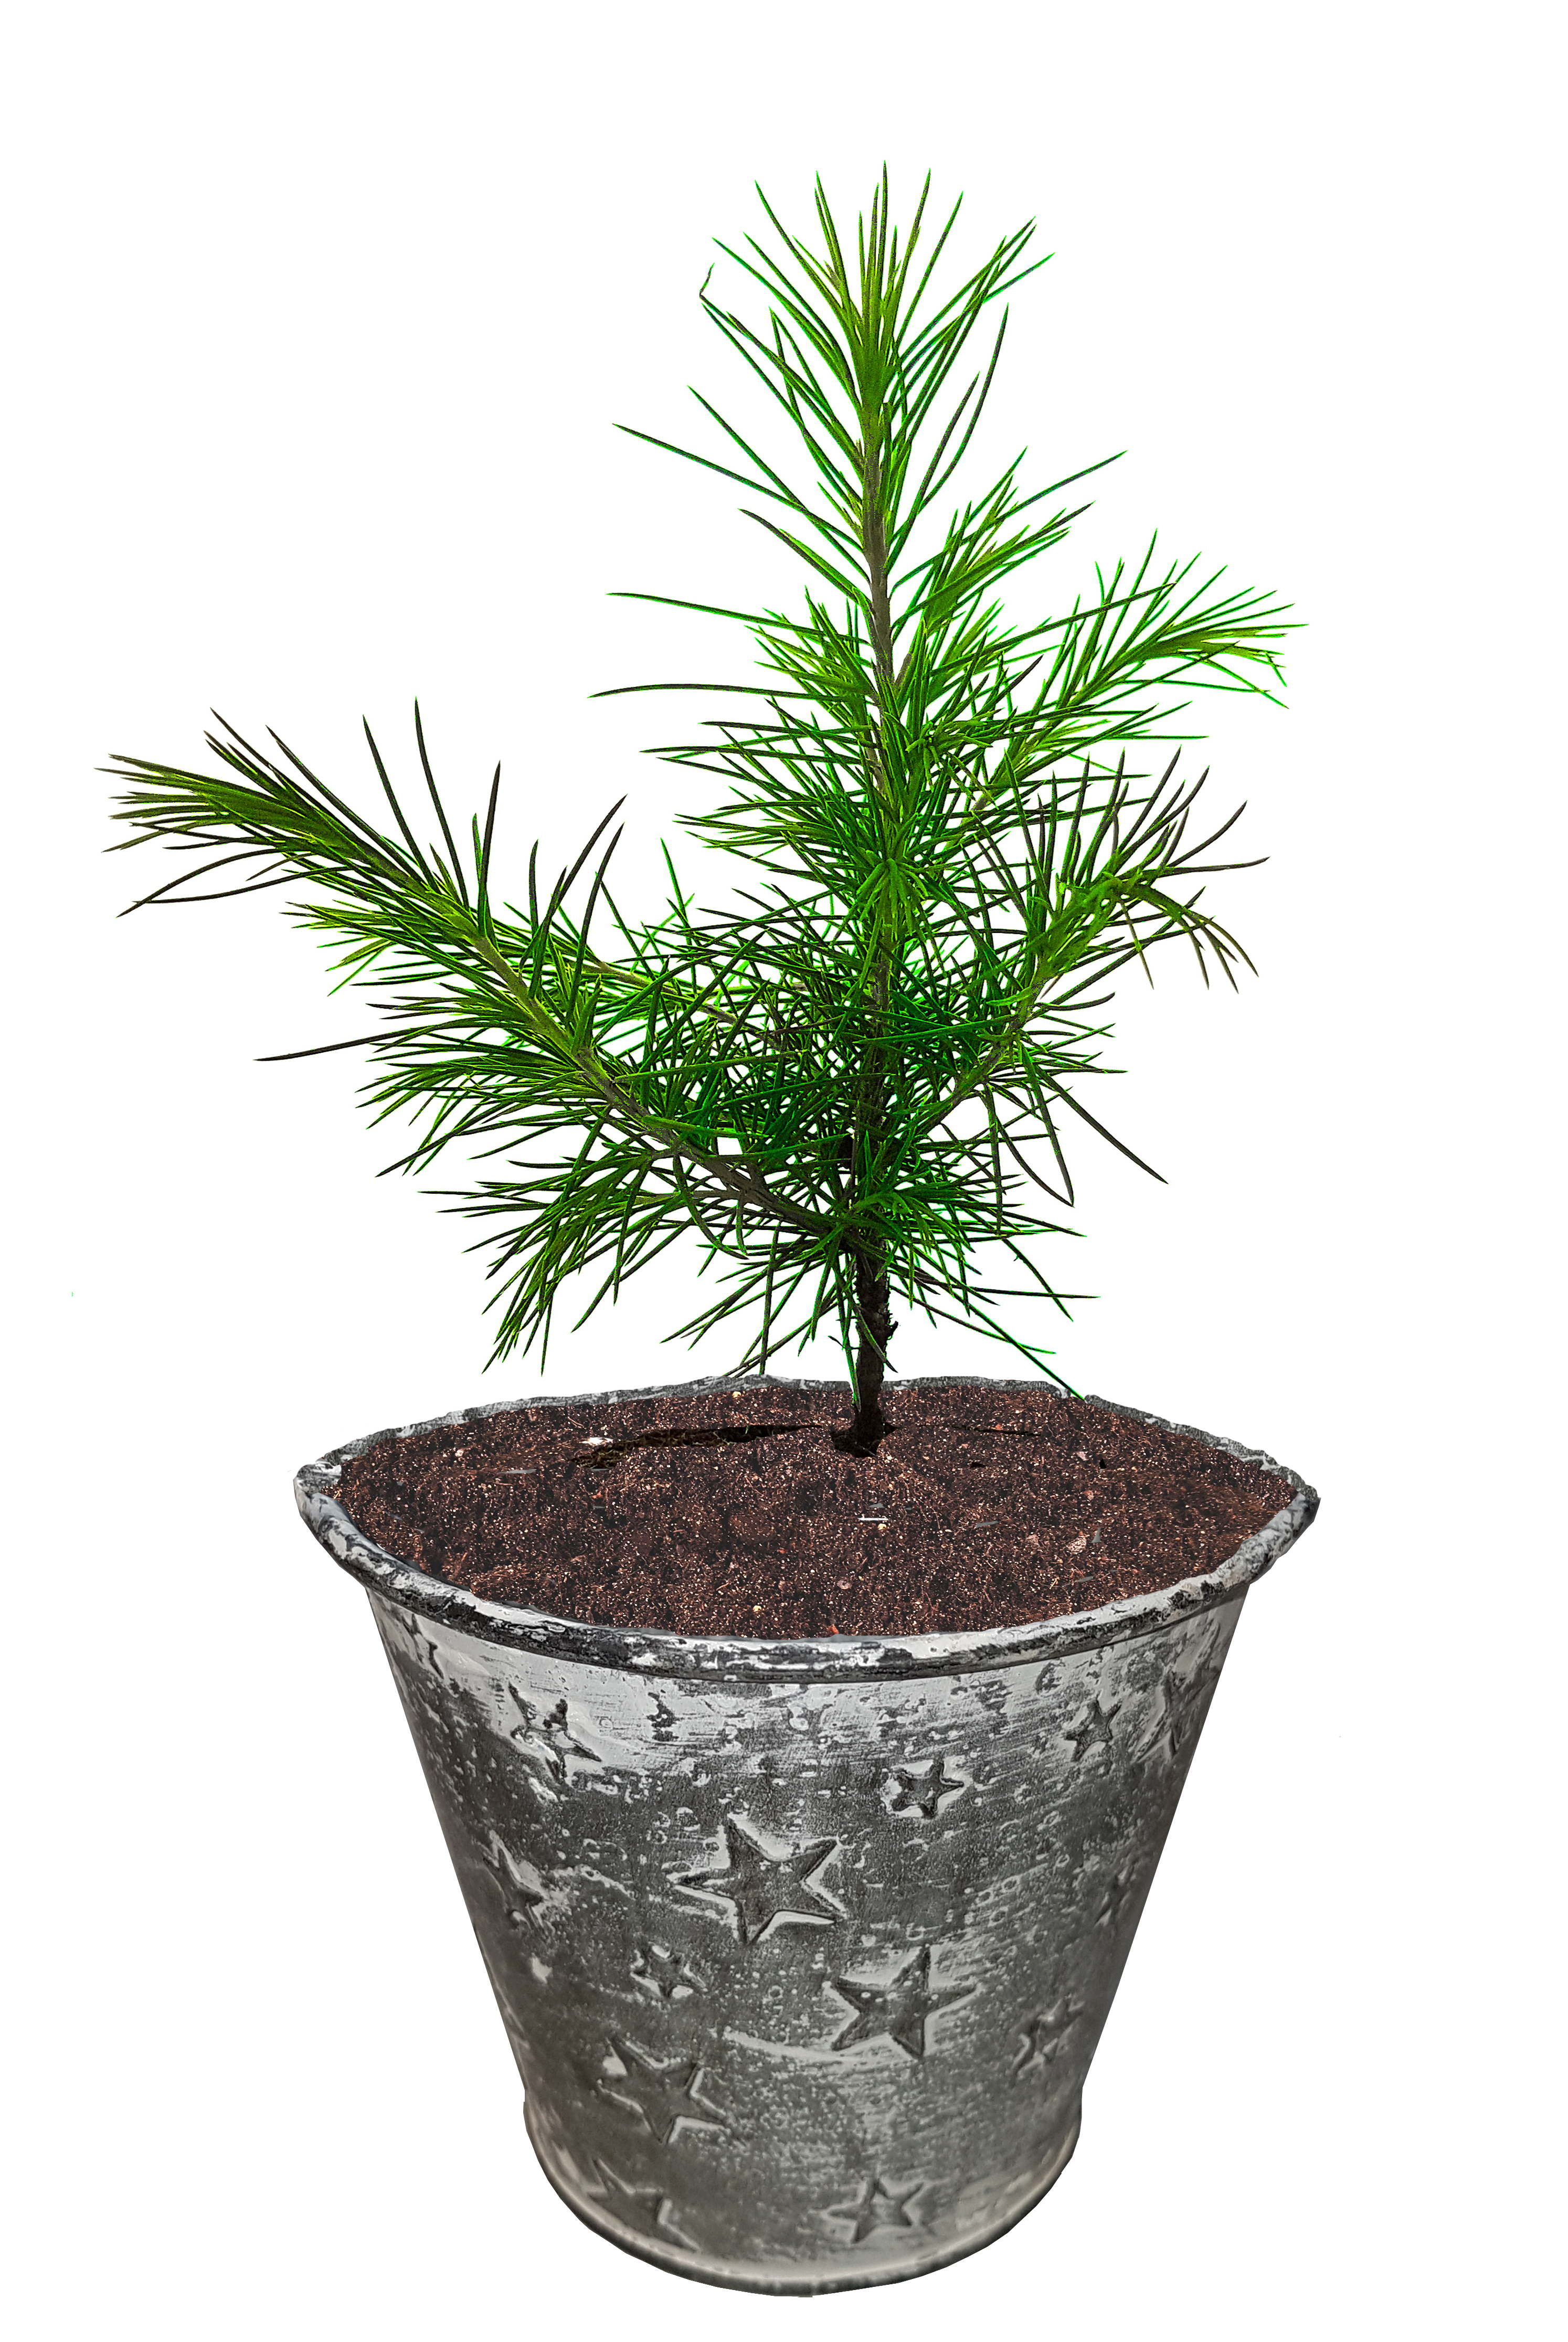 Seedeo® Himalaja-Zeder (Cedrus deodara) Pflanze 2 Jahre Geschenkedition Topf mit Sternen